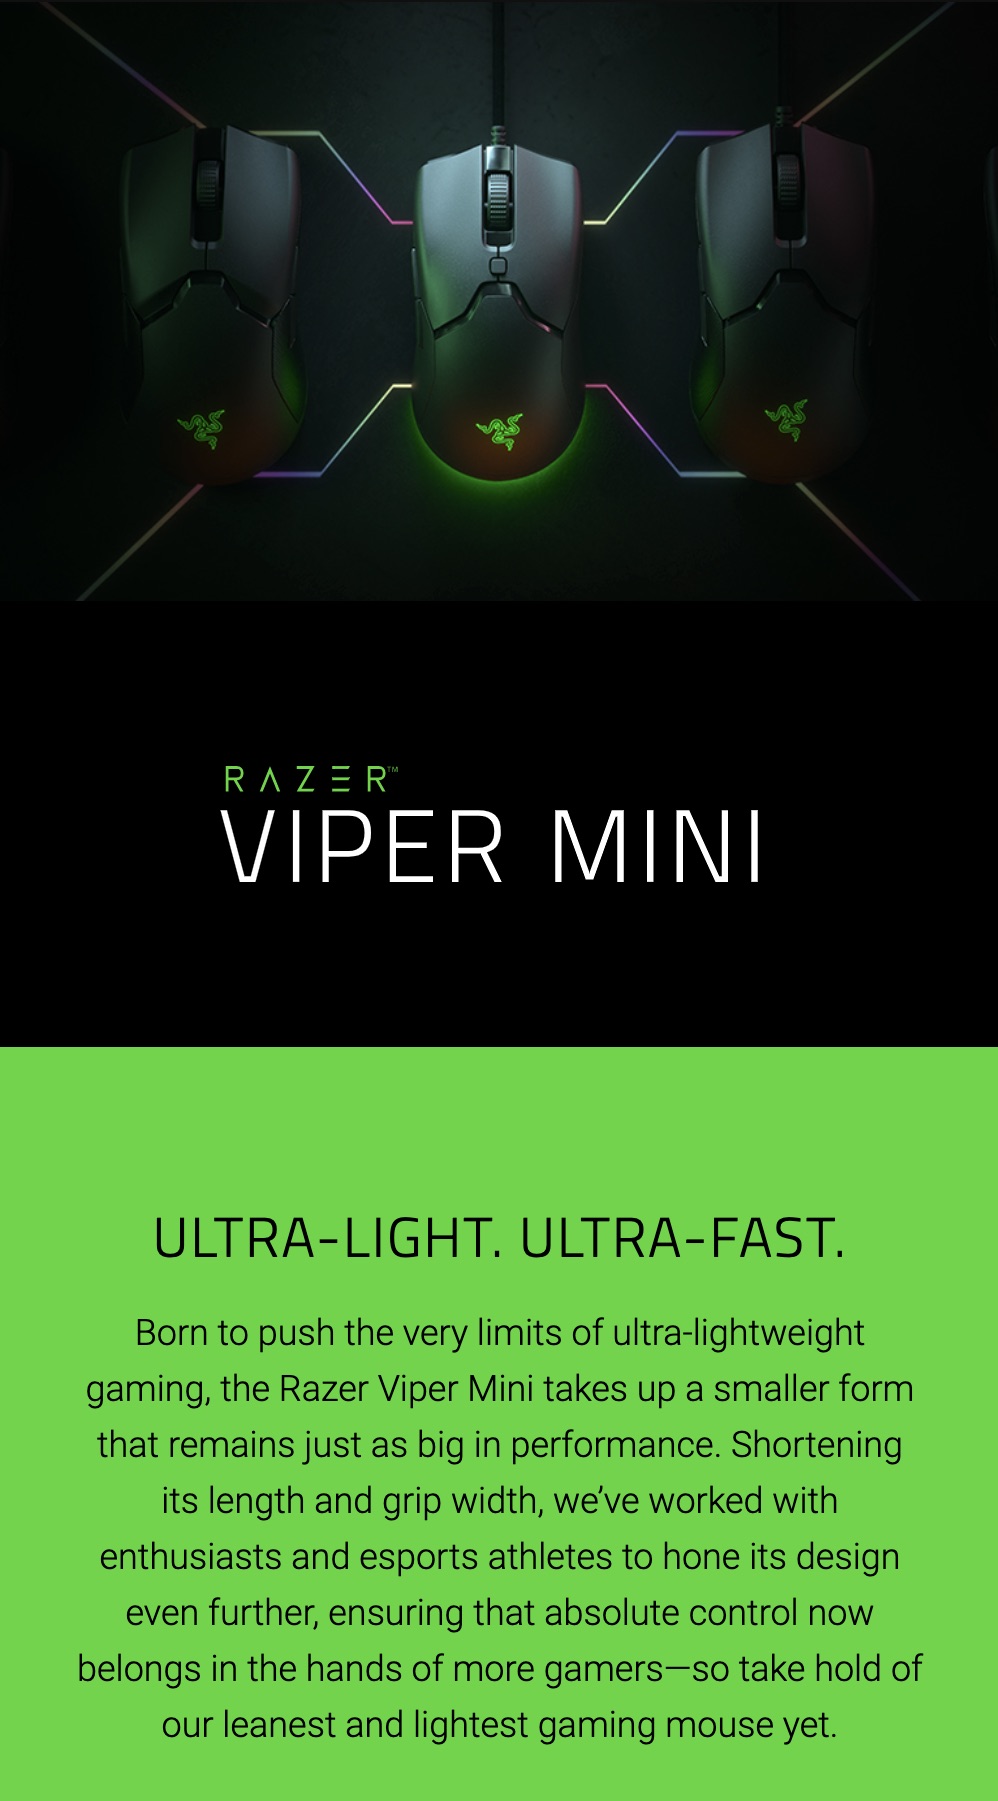 Razer-Viper-Mini-Ultra-Light-Wired-Gaming-Mouse-Description-1